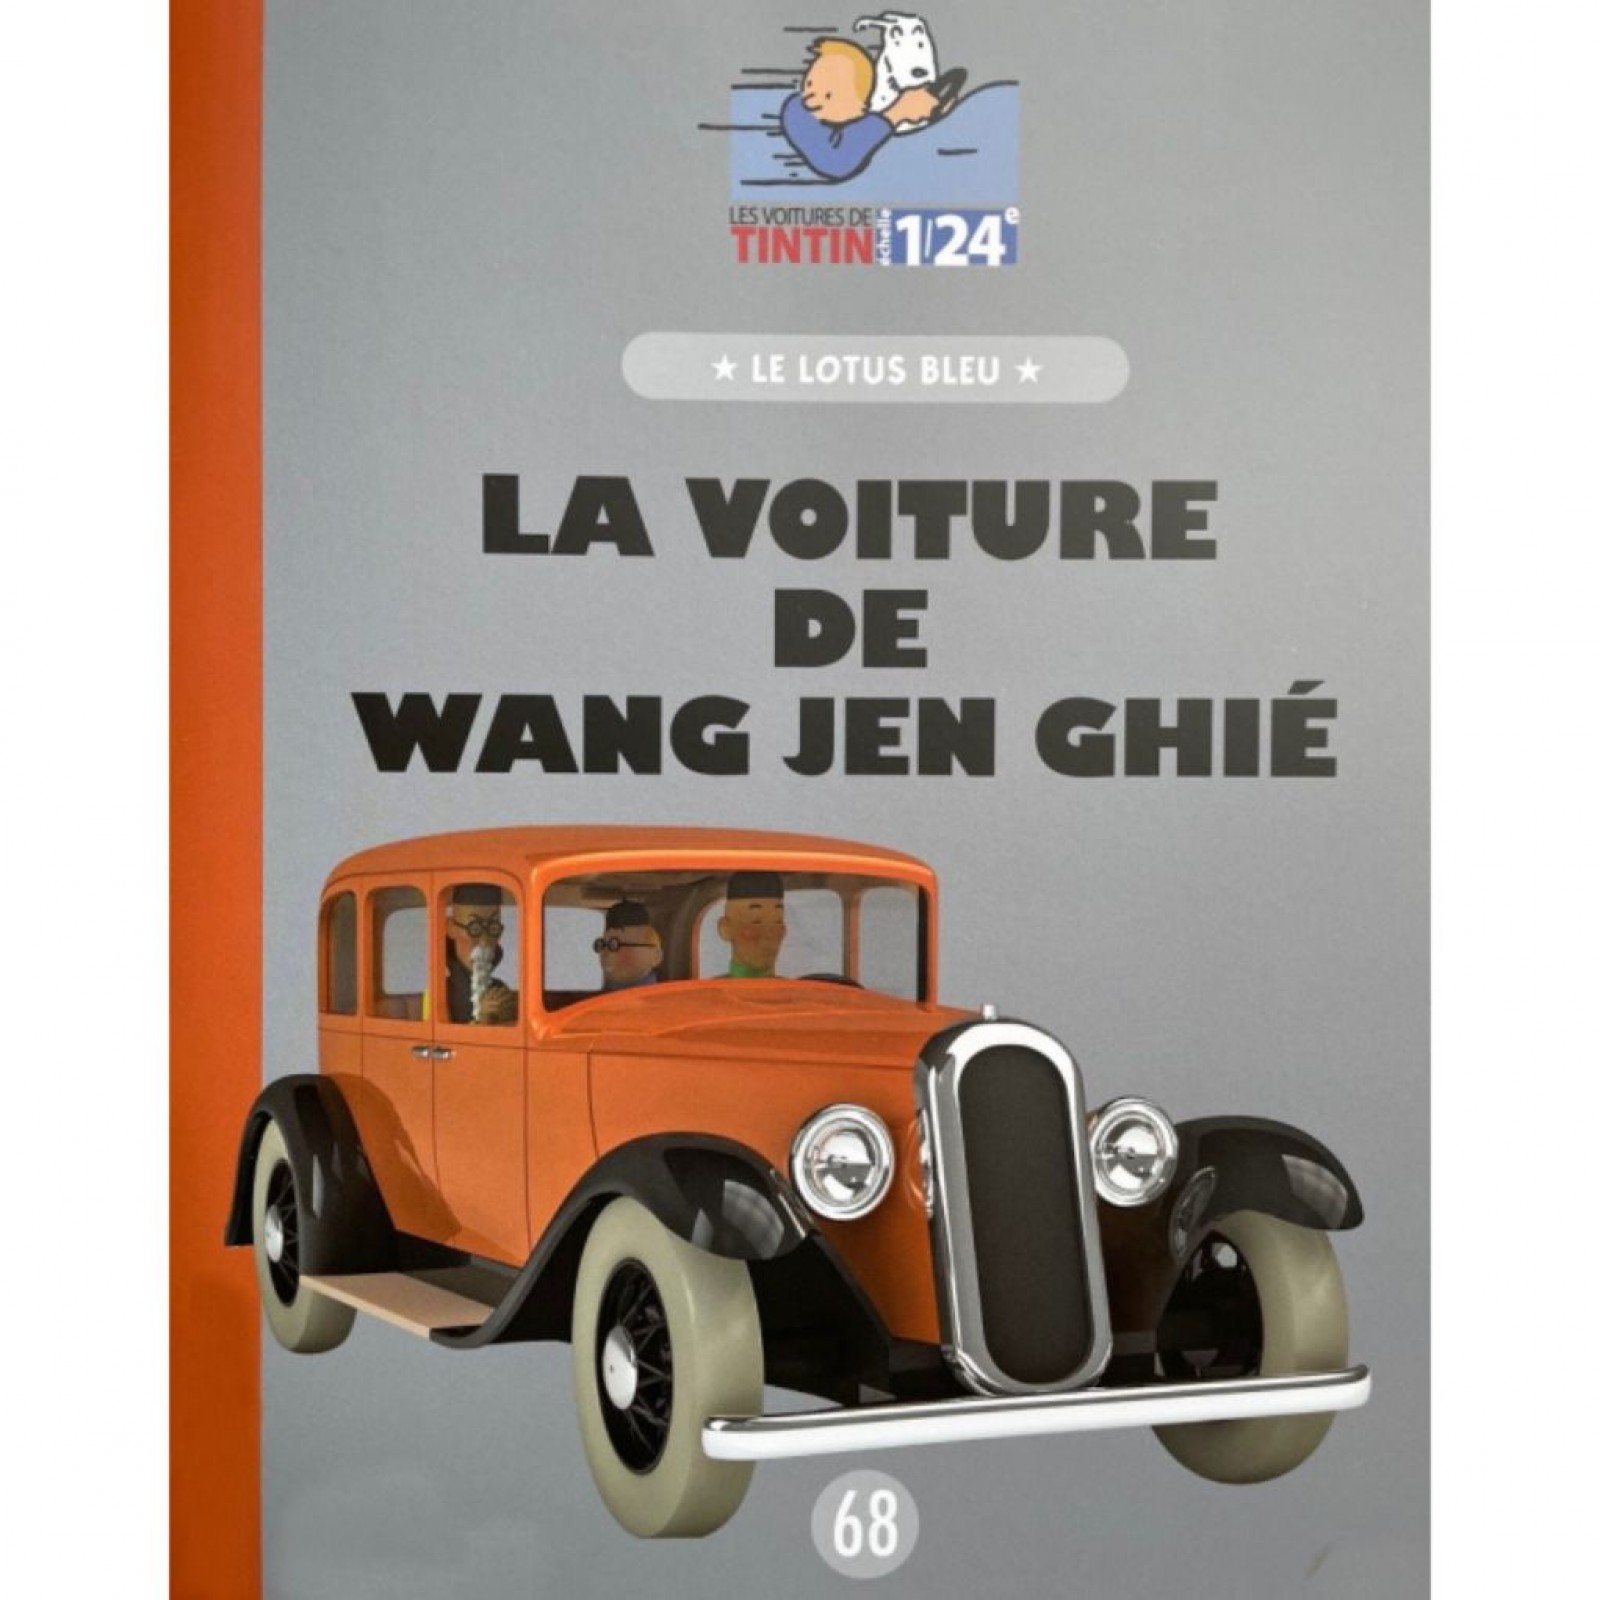 Les véhicules de Tintin au 1/24, La voiture de Wang Jen Ghié, Le Lotus bleu  - Figurines